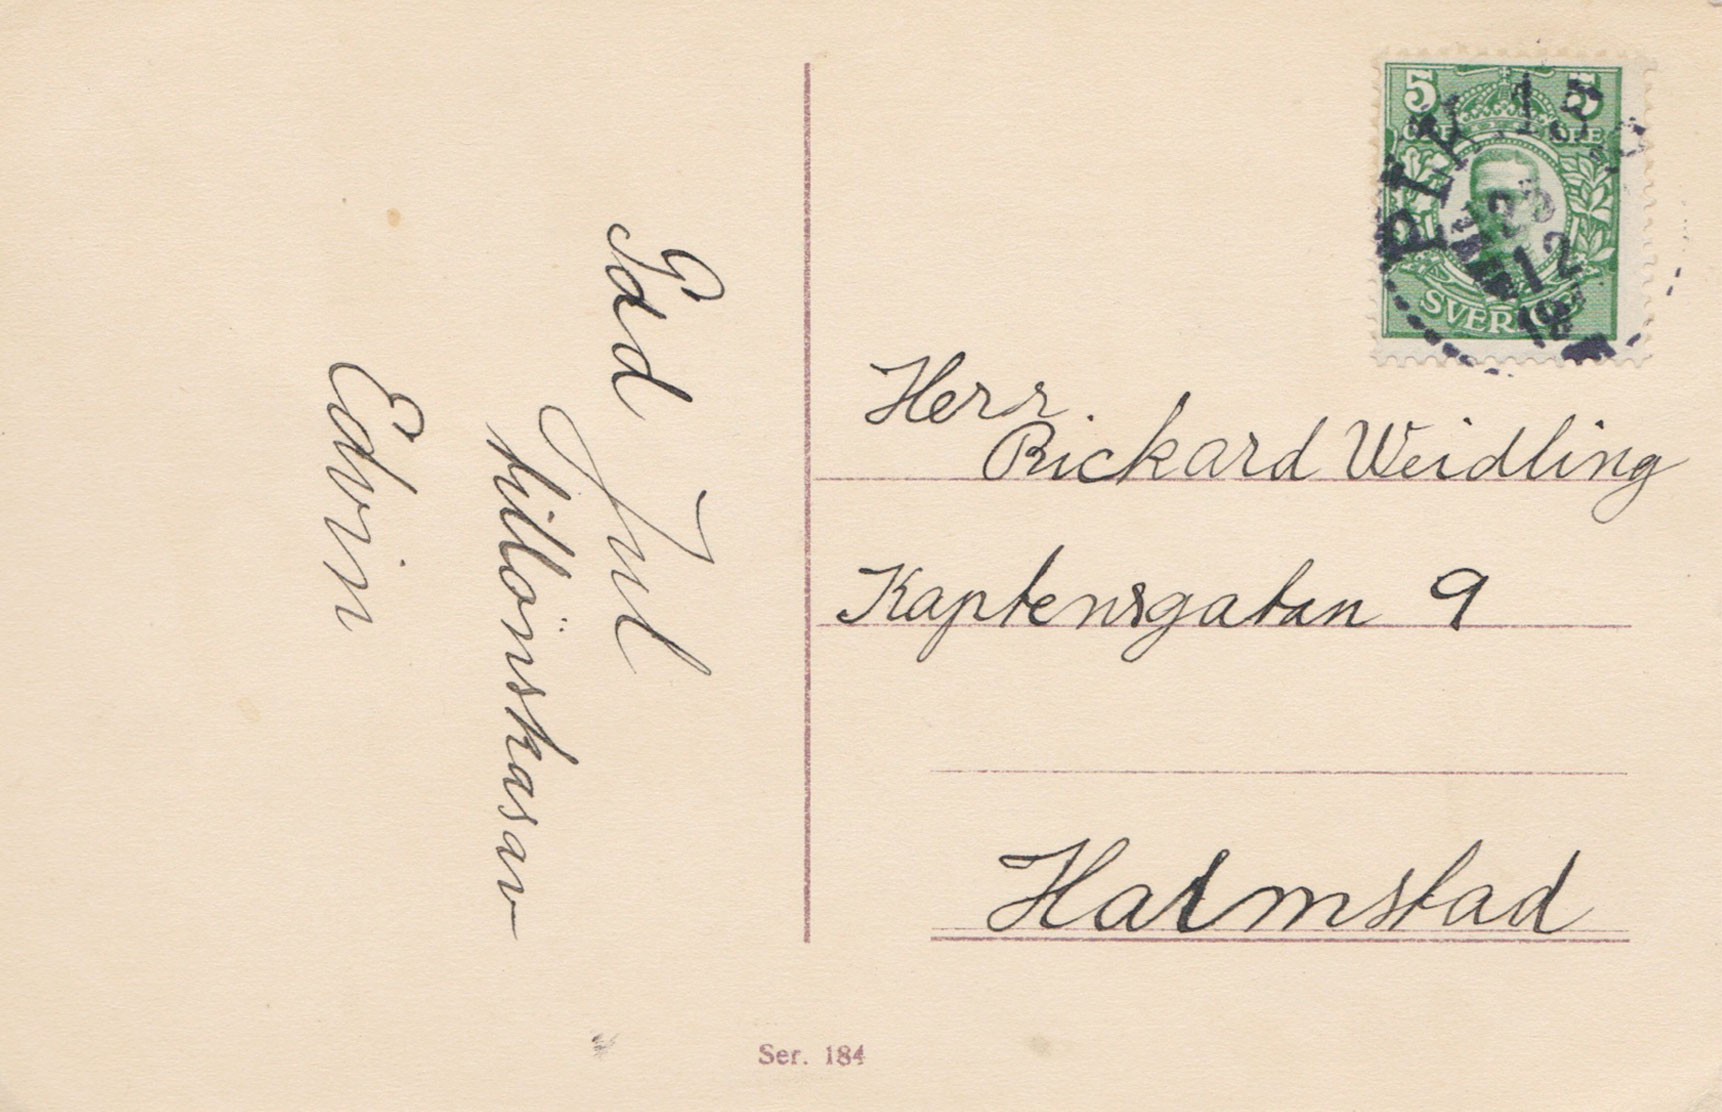 Handwritten message and stamp